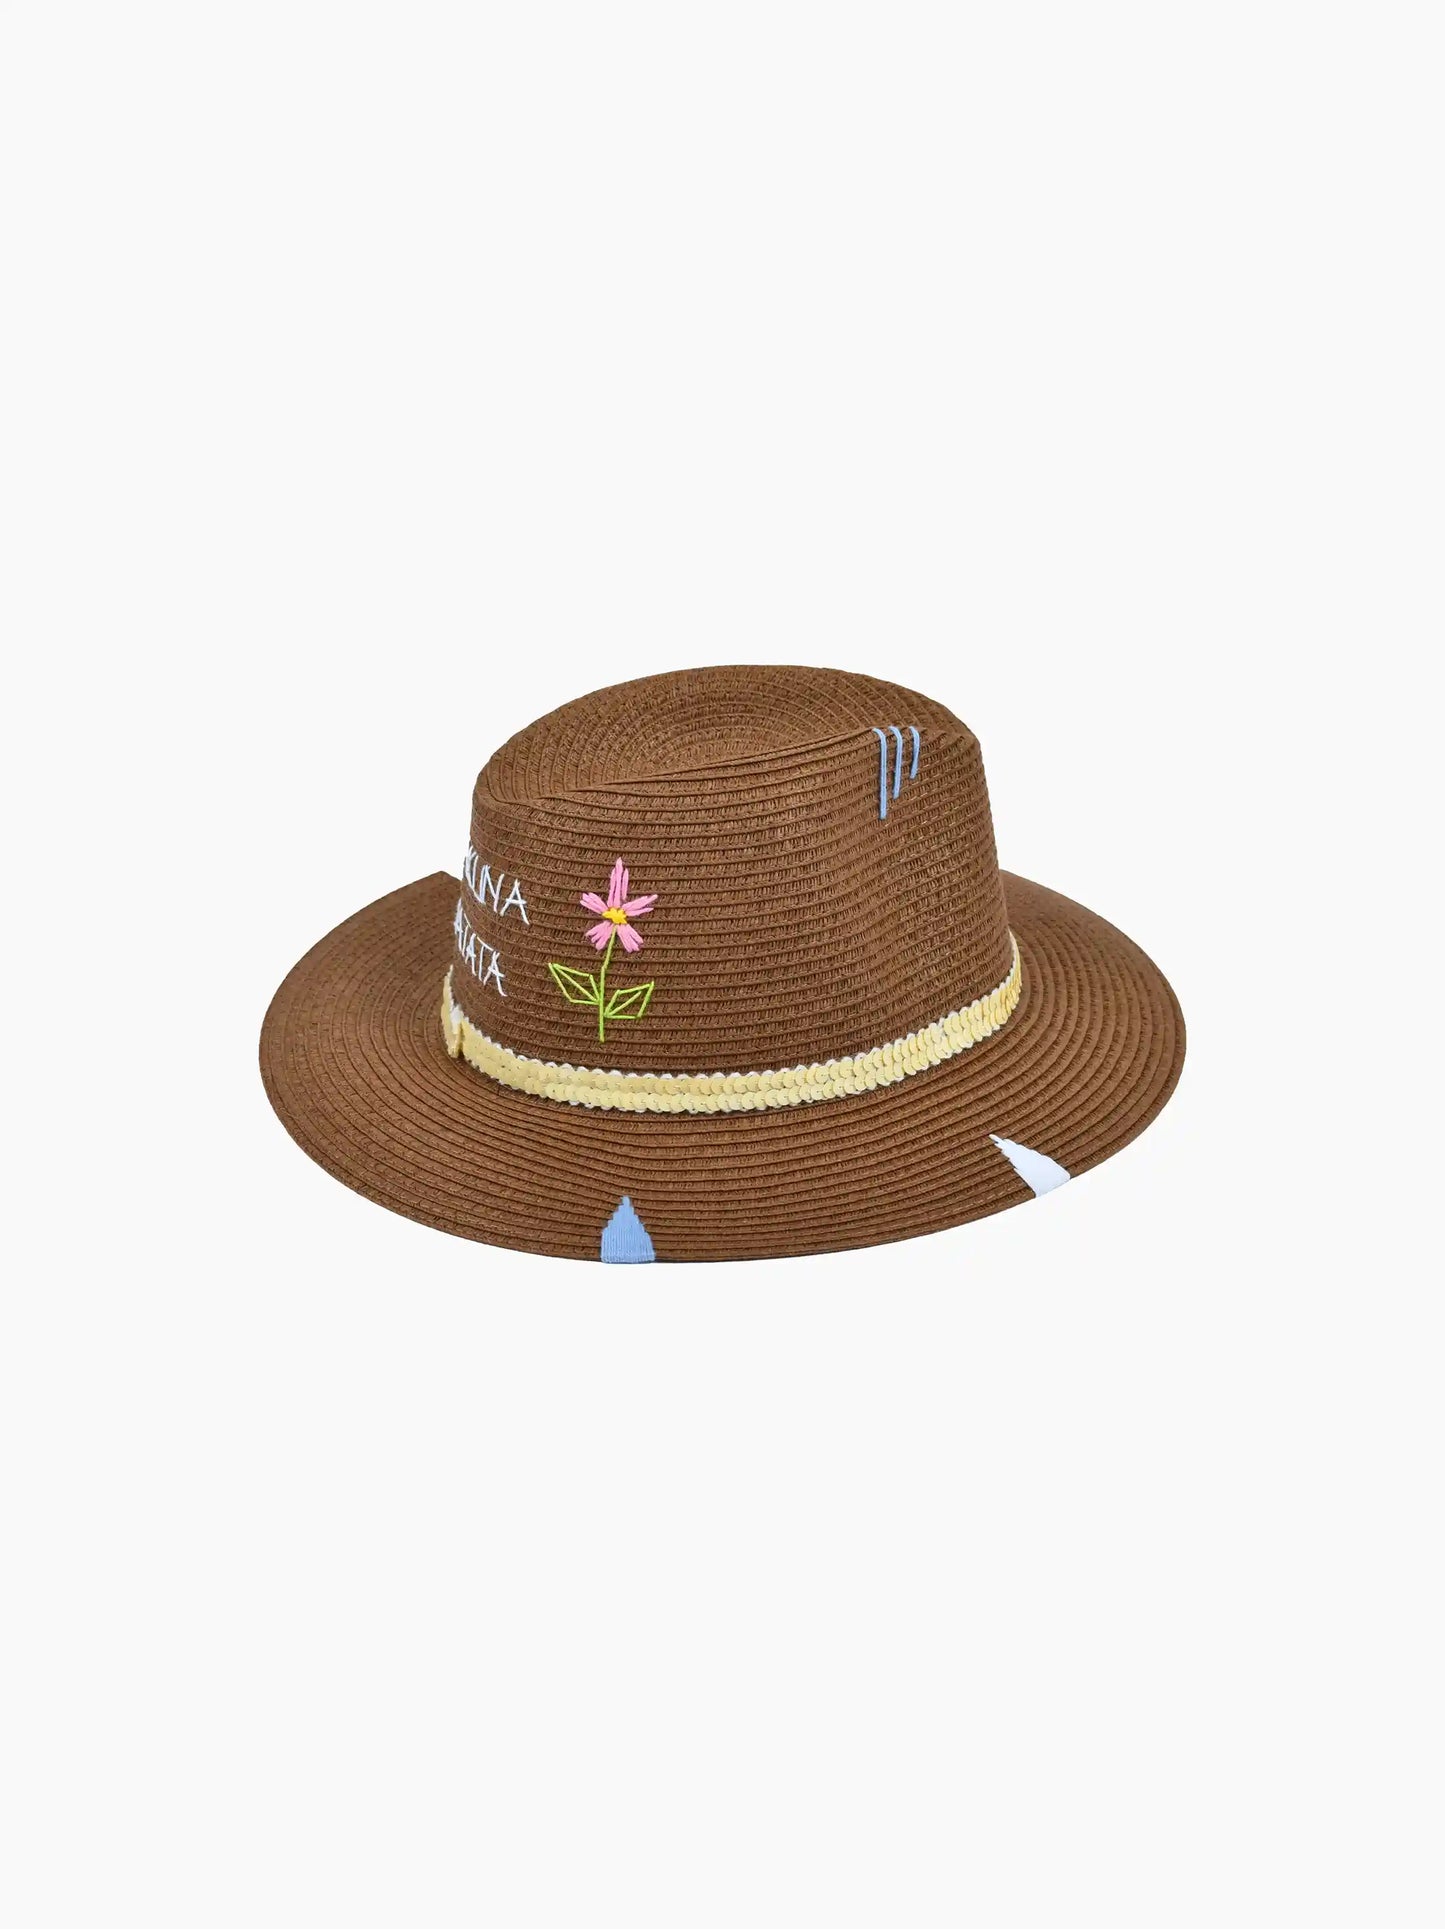 Hakuna Matata Straw Hat